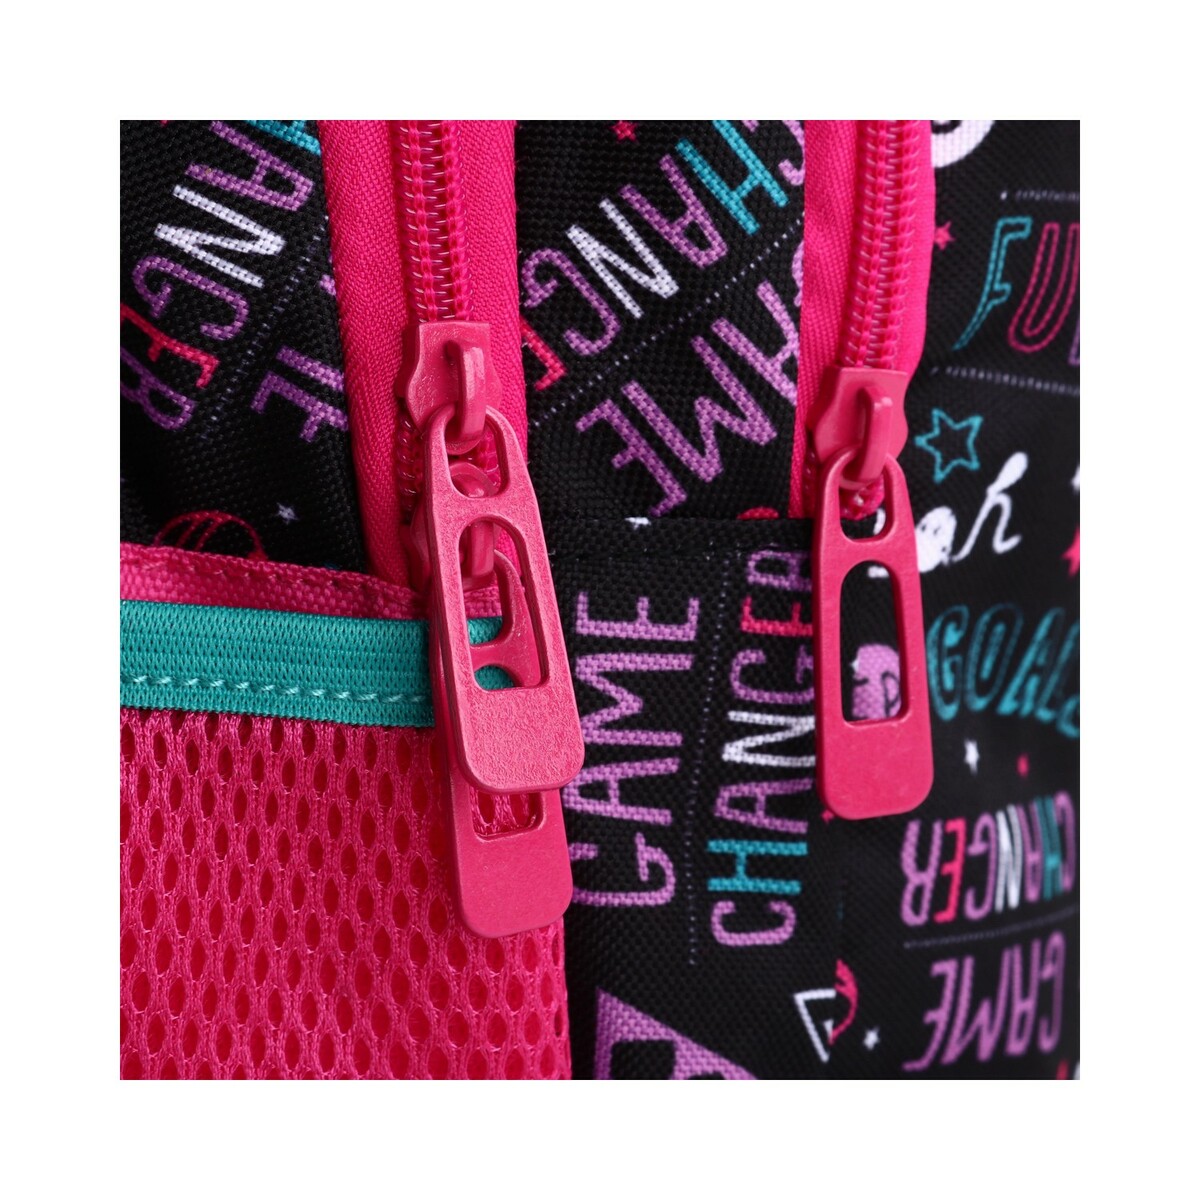 Barbie Backpack 16Inch-WDP1687